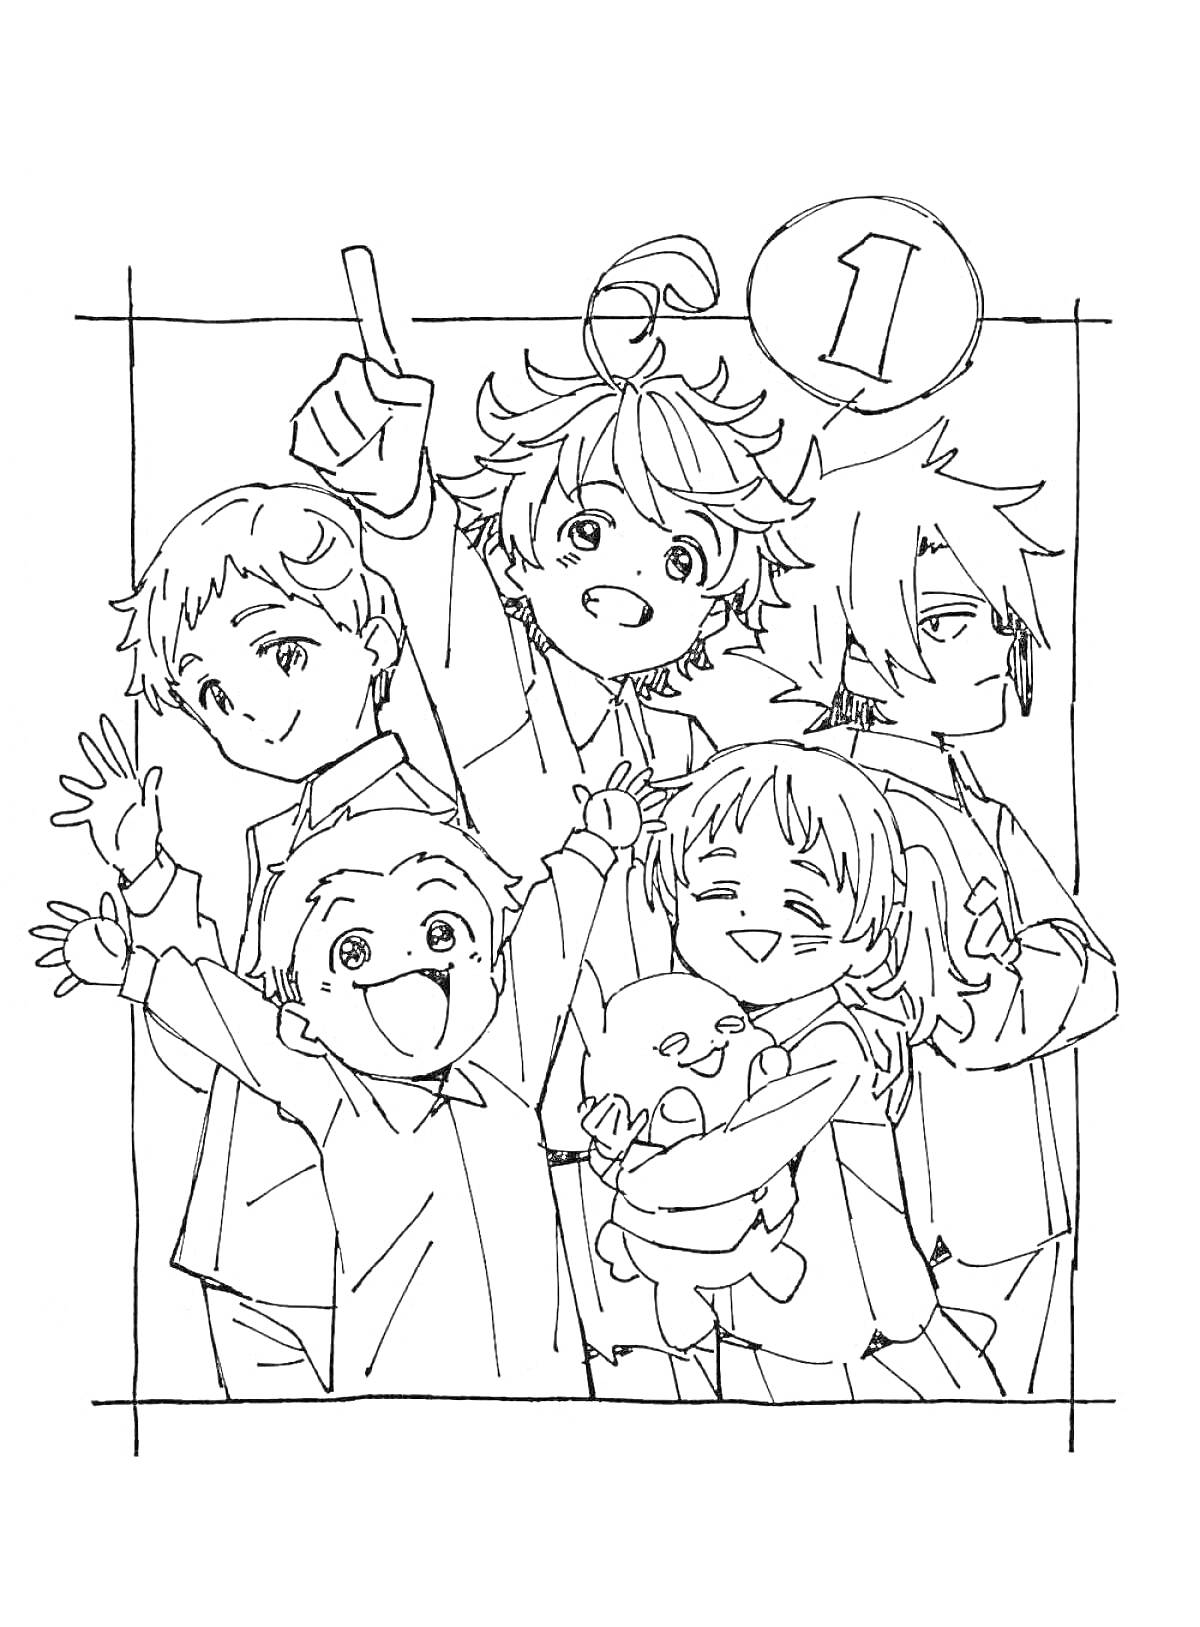 Раскраска группа из пяти аниме персонажей, один персонаж с поднятой рукой, некоторые улыбаются, один держит плюшевую игрушку, на рисунке кружок с цифрой 1